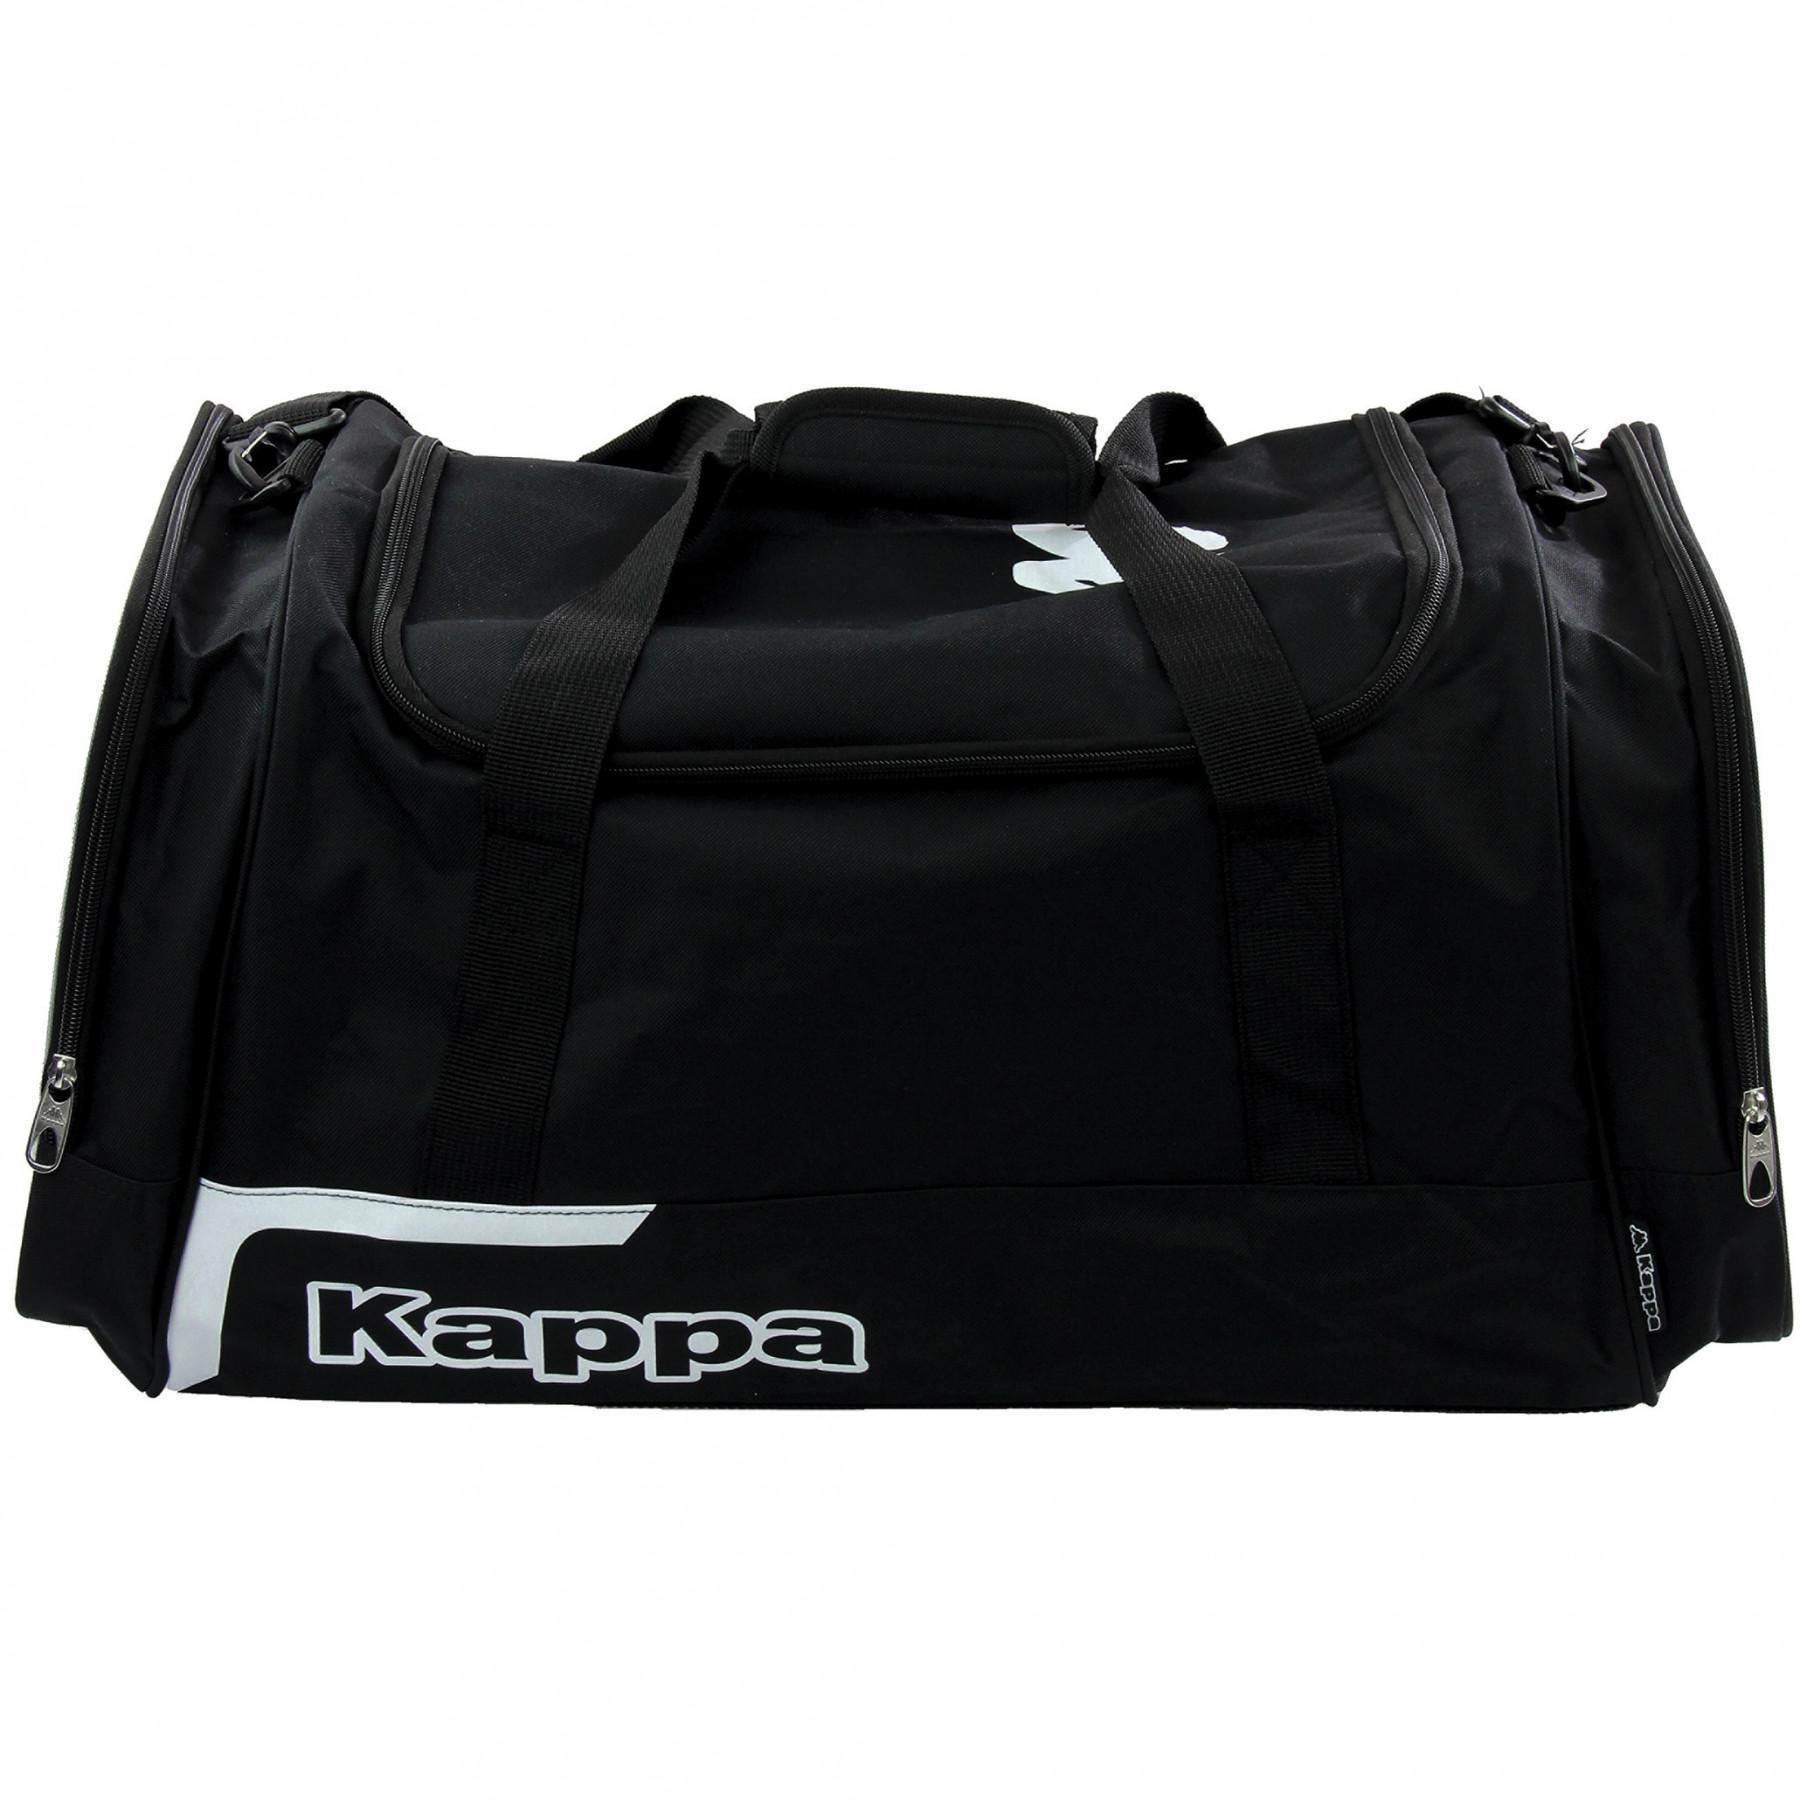 Sports bag Kappa Borza 90L